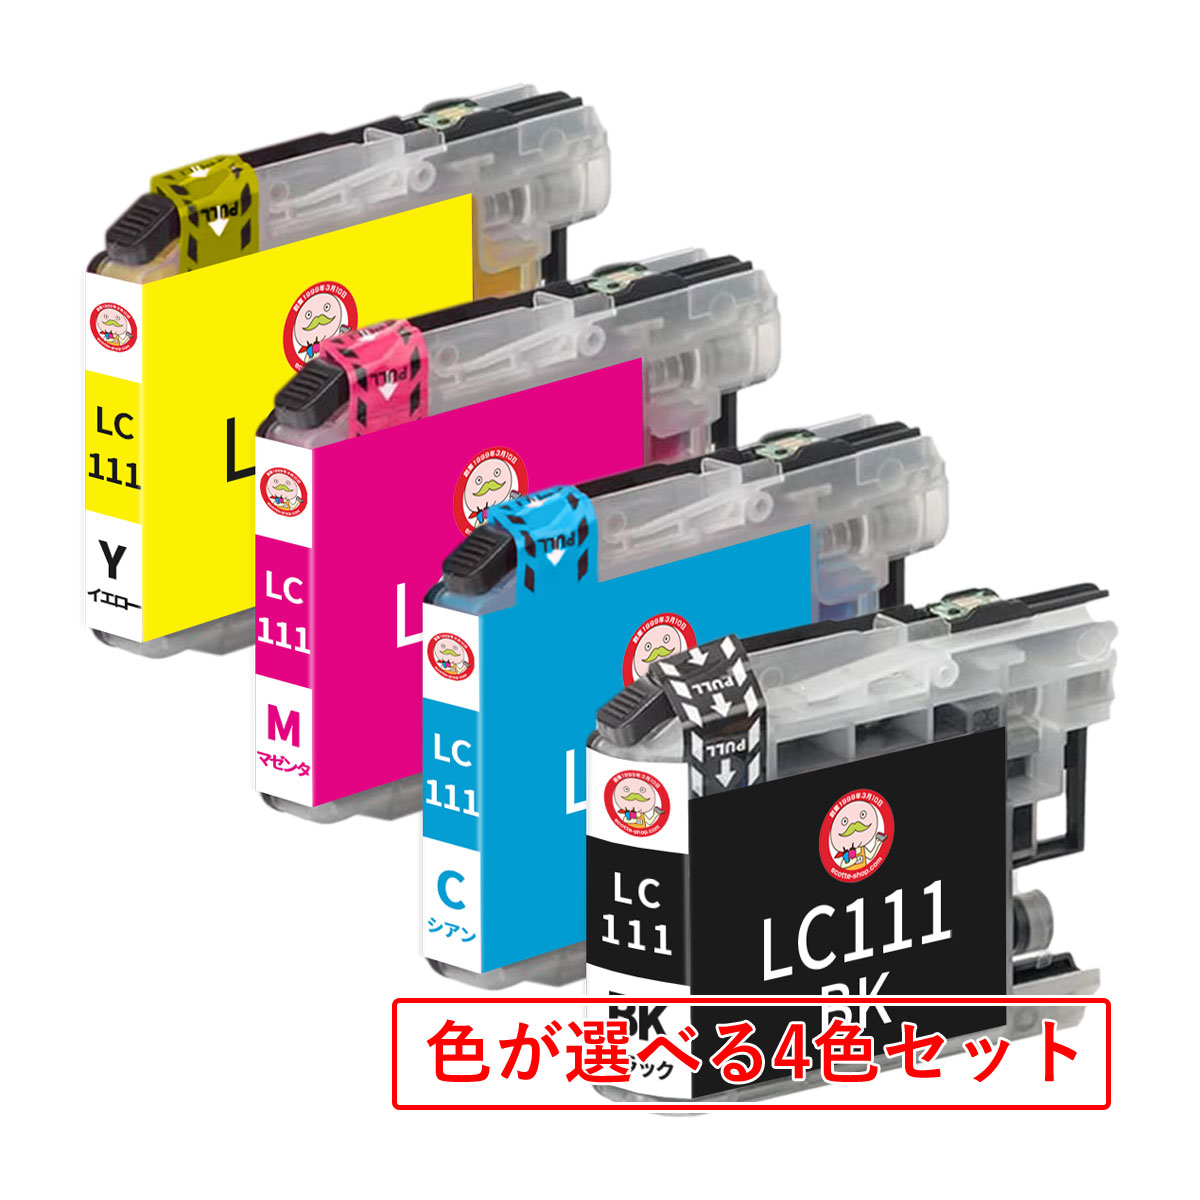 LC111-4PK BR社用 互換インクカートリッジ 染料 色が選べる 4色 ┃ DCP-J952N DCP-J957N DCP-J552N DCP-J557N MFC-J720D PRIVIO BASIC プリビオ ベーシック インク カート